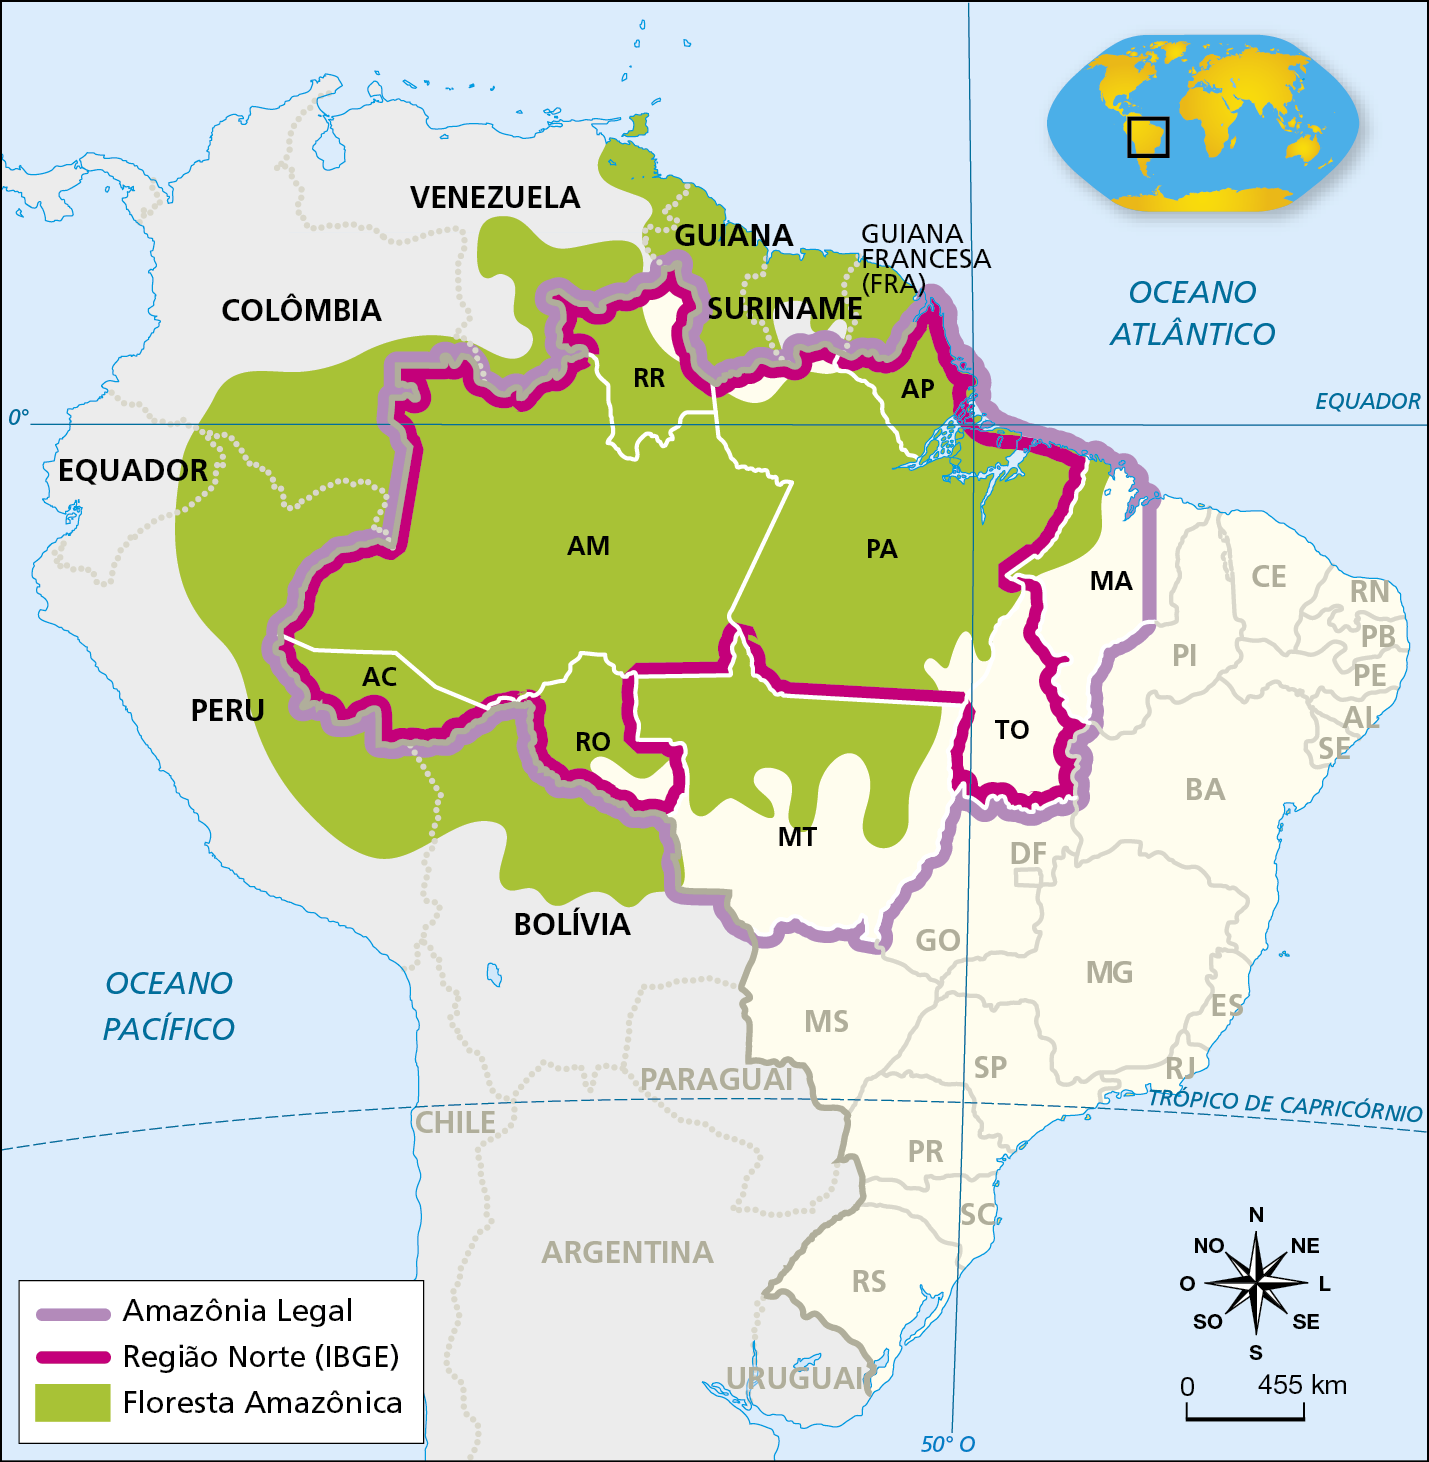 Mapa. Região Norte, Floresta Amazônica e Amazônia Legal (2020). O mapa evidencia o território brasileiro com destaque para os limites das fronteiras da região Norte, de acordo com o Instituto Brasileiro de Geografia e Estatística. Representa também os países fronteiriços à região Norte, a Amazônia Legal e a extensão da Floresta Amazônica. Amazônia Legal (delimitada por uma linha lilás): abrange os estados do Acre, Rondônia, Mato Grosso, Tocantins, Pará, Amapá, Roraima e parte oeste do Maranhão. Região Norte (Instituto Brasileiro de Geografia e Estatística, delimitada por uma linha rosa): abrange os estados do Acre, Rondônia, Tocantins, Pará, Amapá, Roraima e Amazonas. Floresta Amazônica (representada por meio de uma mancha verde): se distribui pelos estados do Acre, Amazonas, Roraima, Pará, Amapá; norte dos estados  do Maranhão, do Mato Grosso e de Rondônia; parte da Bolívia, Peru, Equador, Colômbia, Venezuela, Guiana, Suriname e Guiana Francesa. Abaixo, rosa dos ventos e escala de 0 a 455 quilômetros.